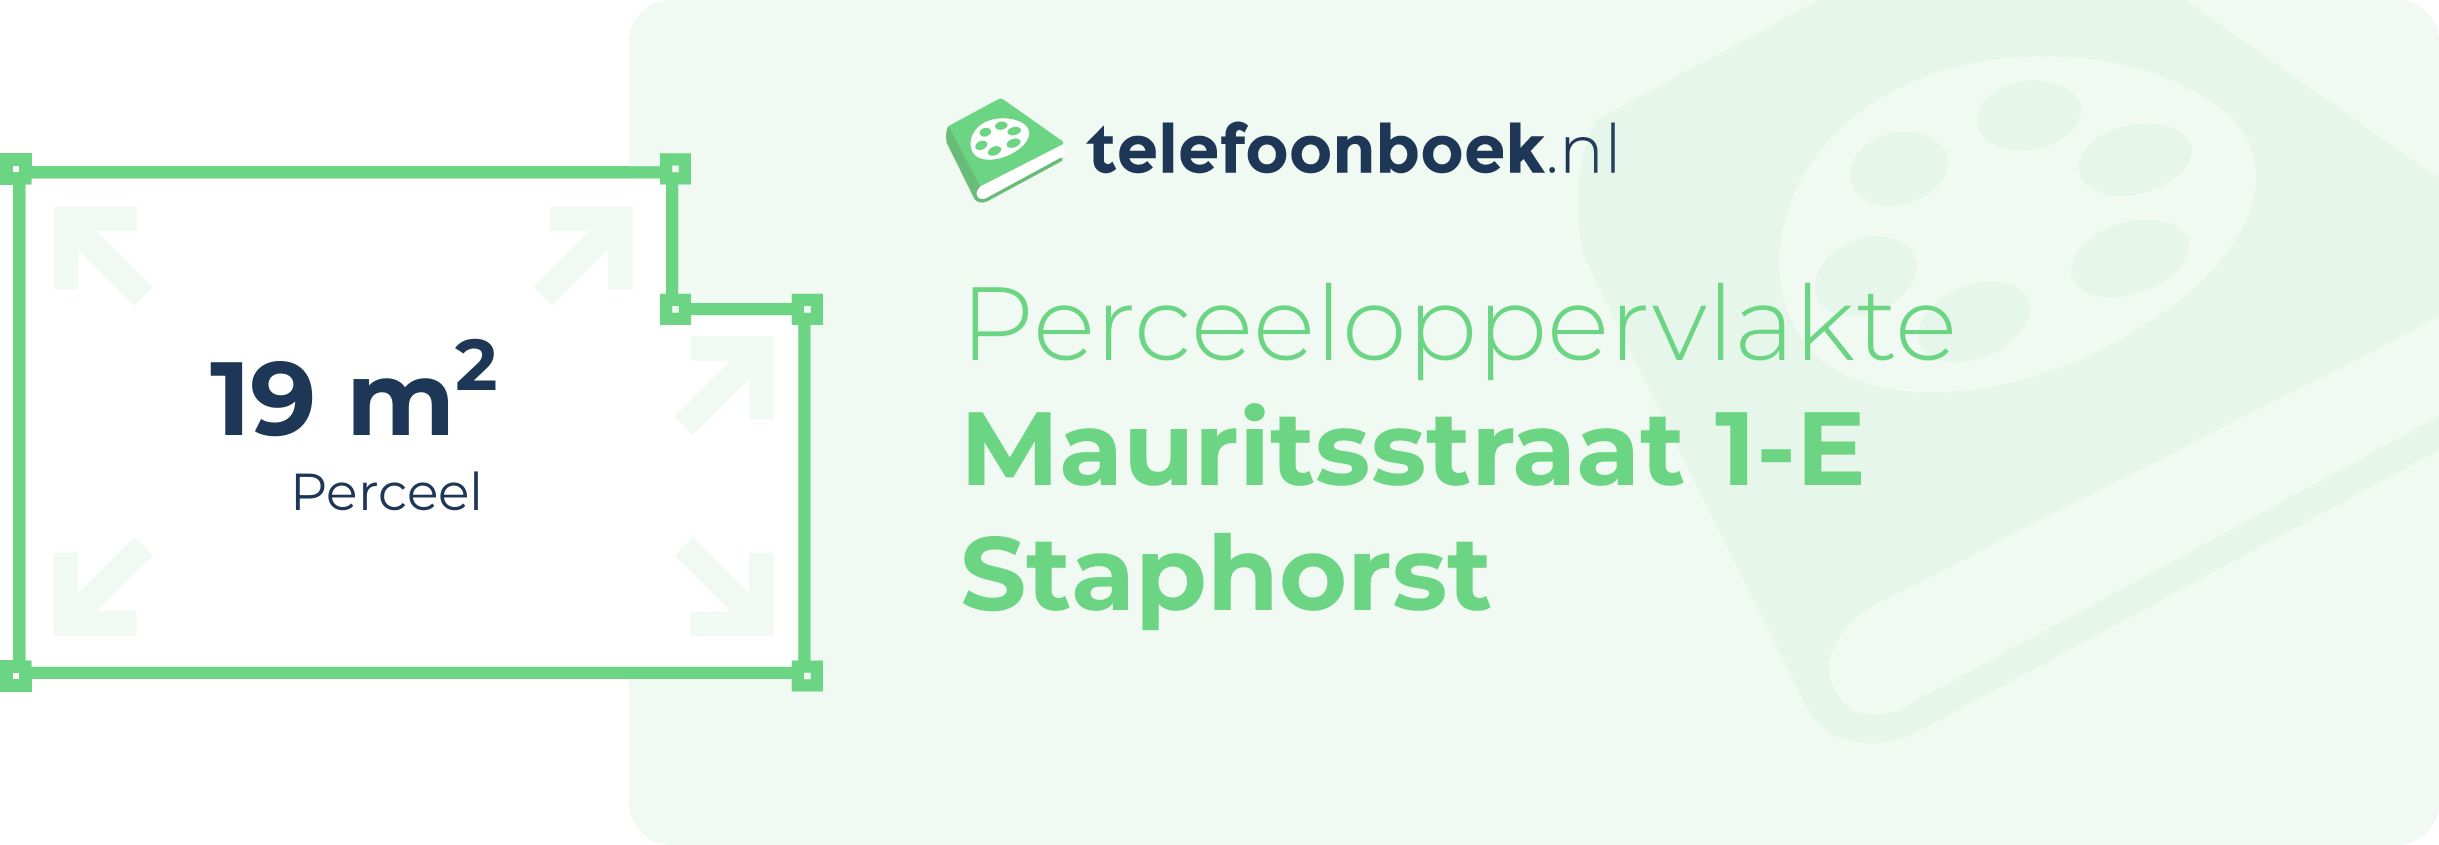 Perceeloppervlakte Mauritsstraat 1-E Staphorst